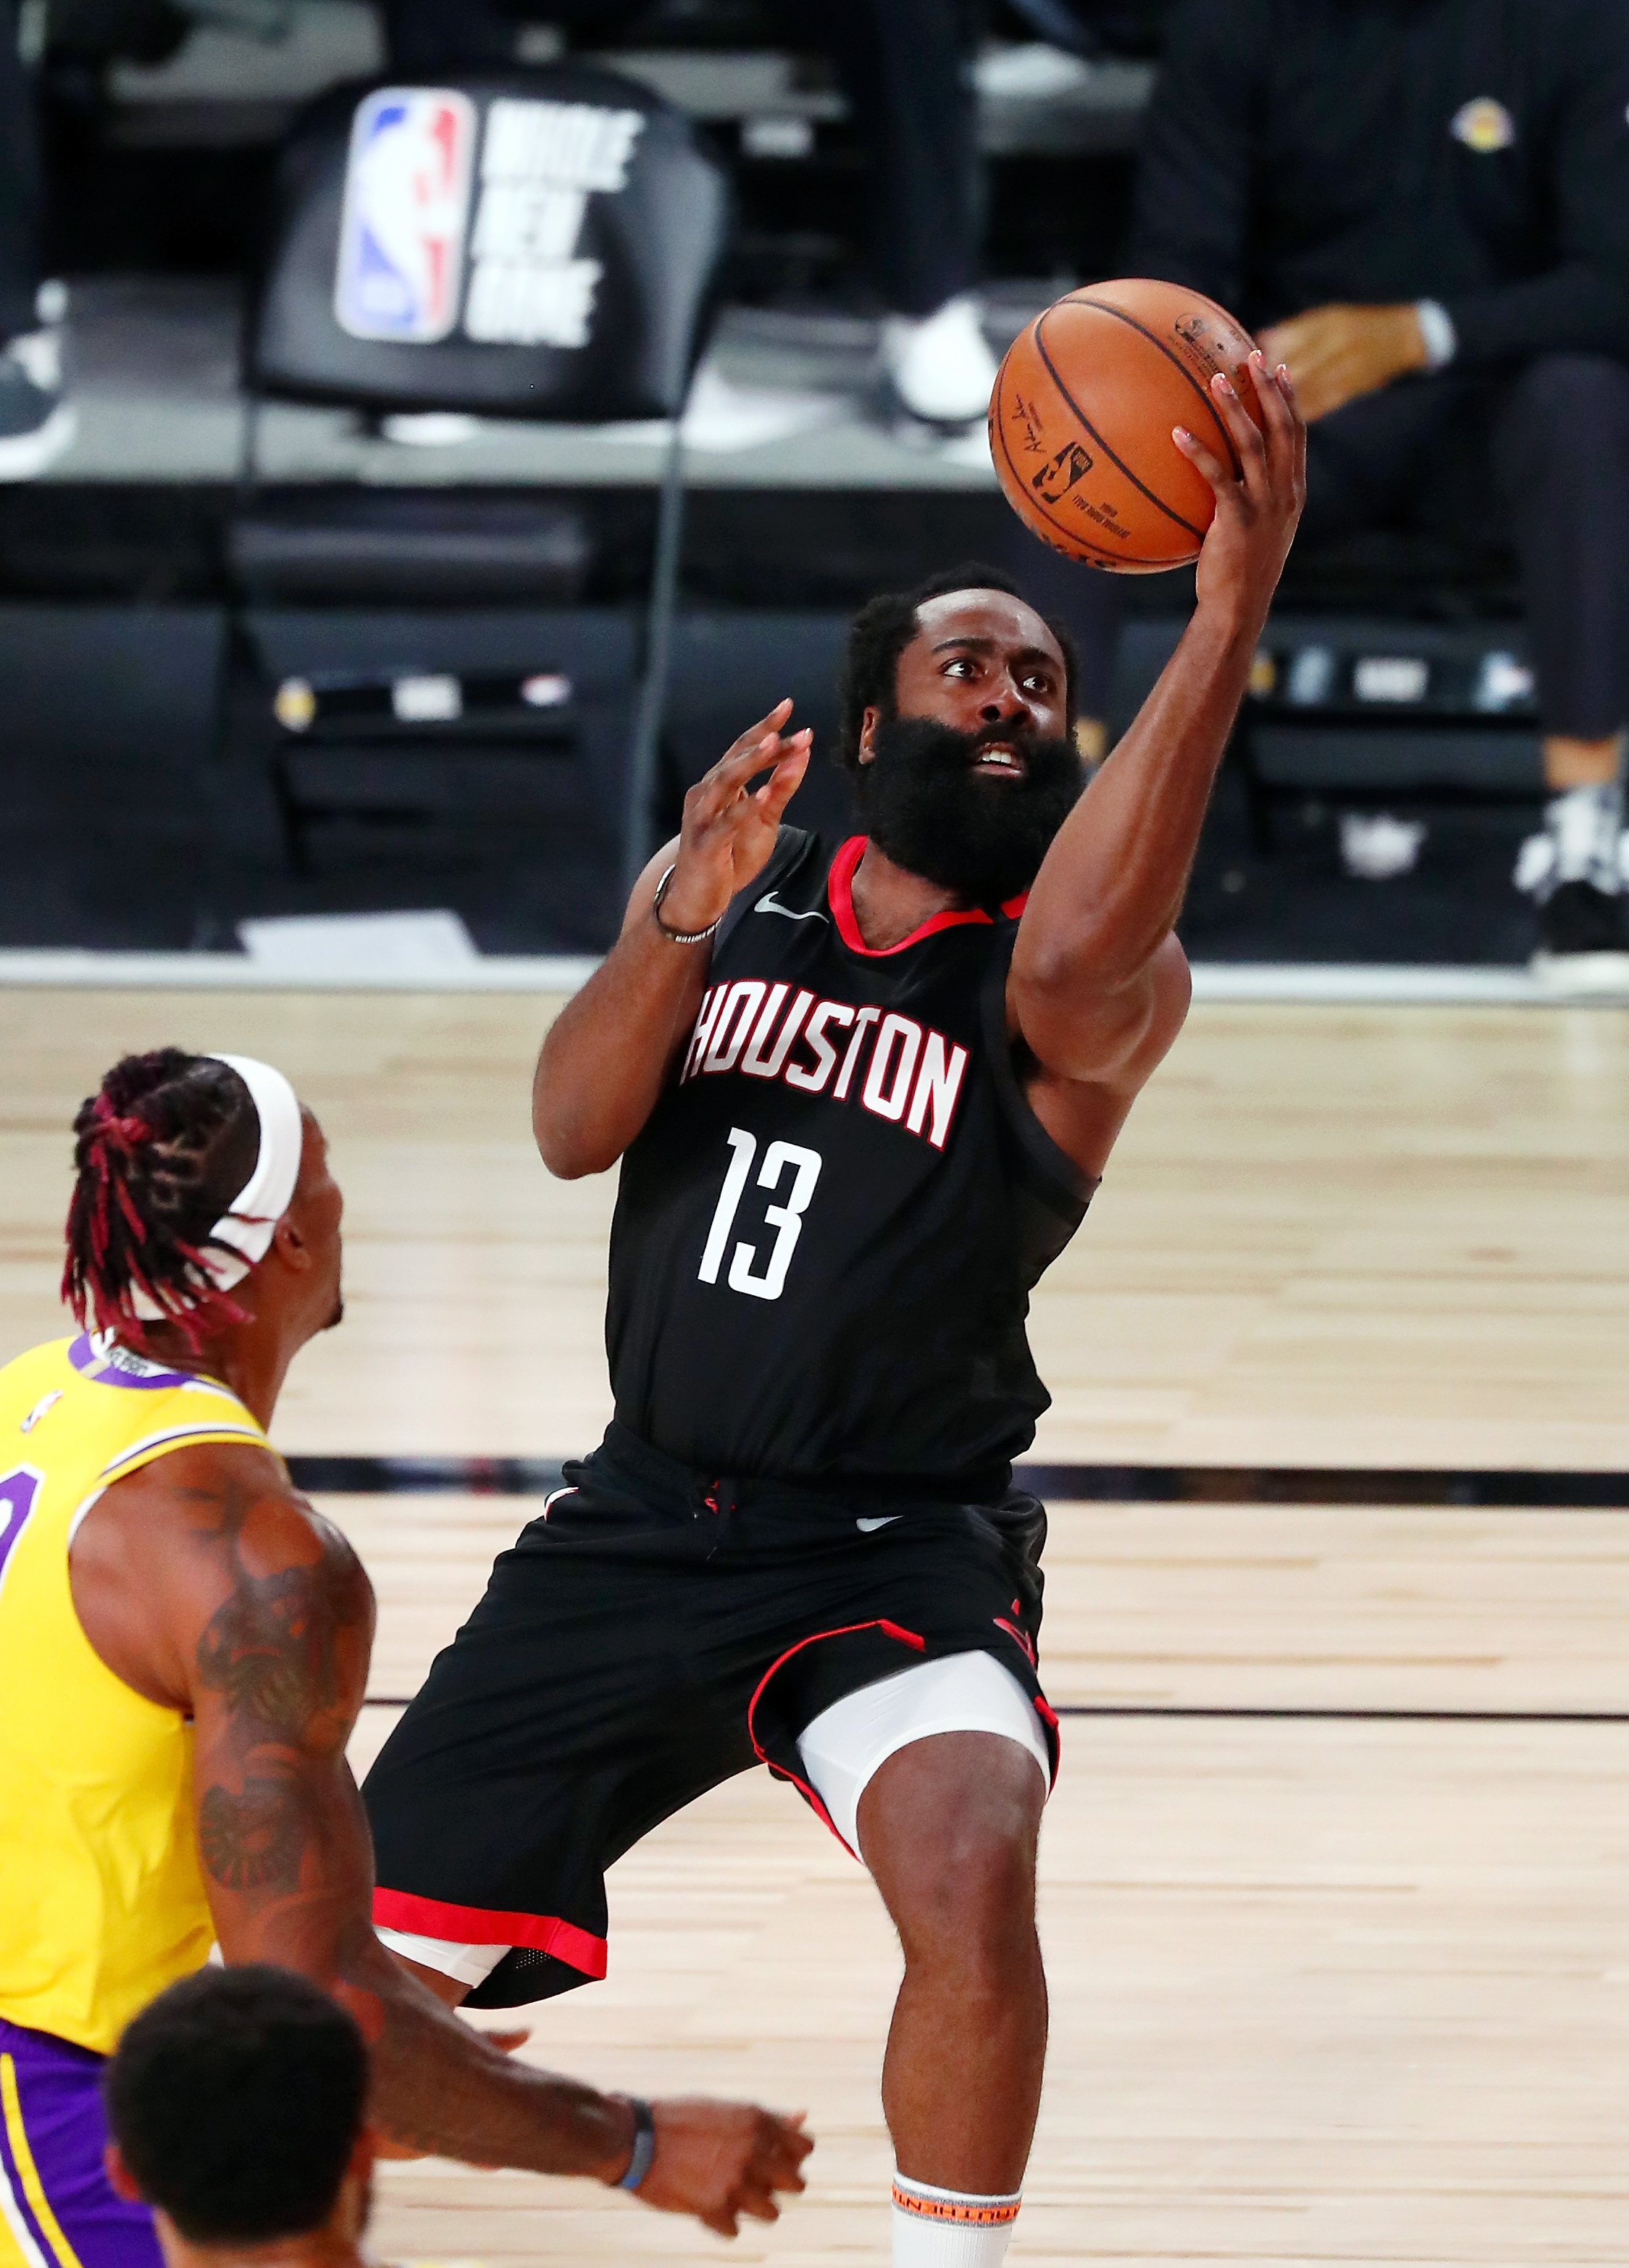 NBA: Los Angeles Lakers at Houston Rockets